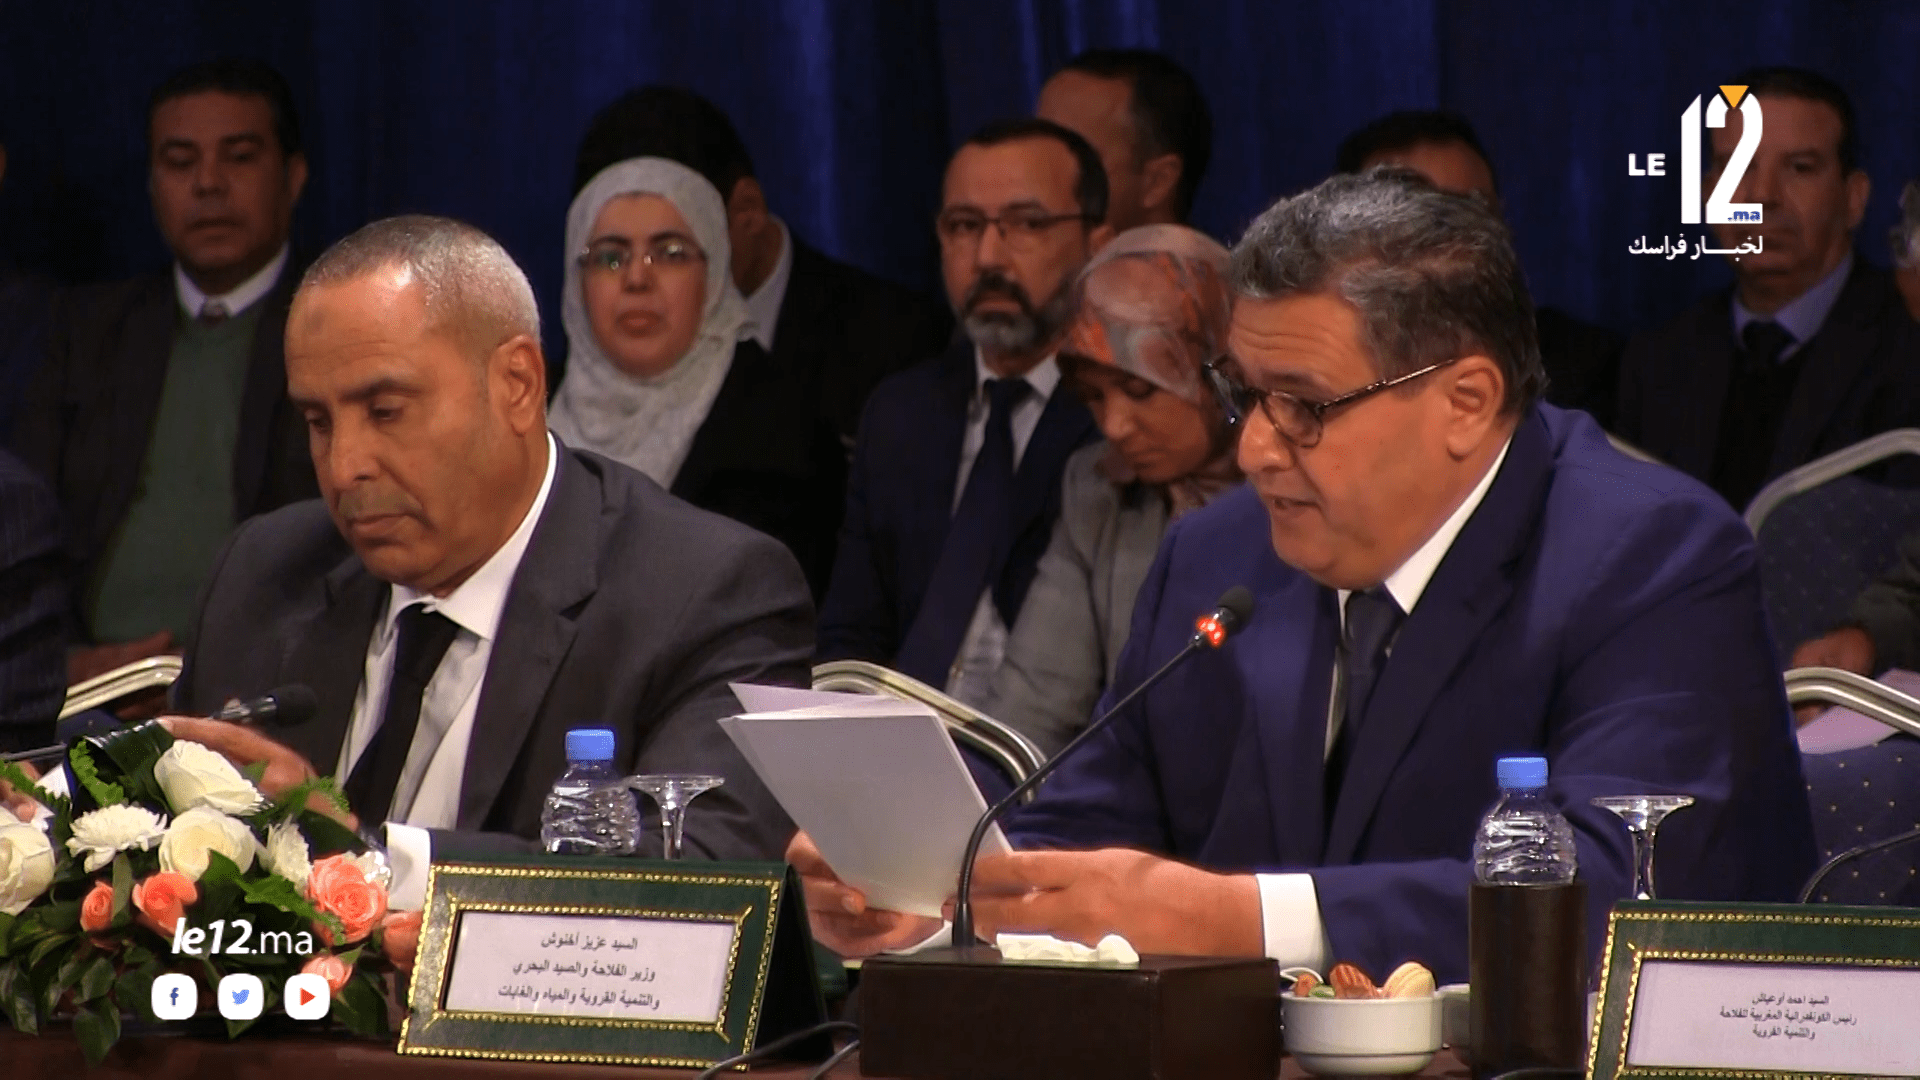 بالفيديو. هكذا تحدث الوزير أخنوش الى الفلاحين  عن حصيلة مخطط المغرب الأخضر(الكلمة كاملة)